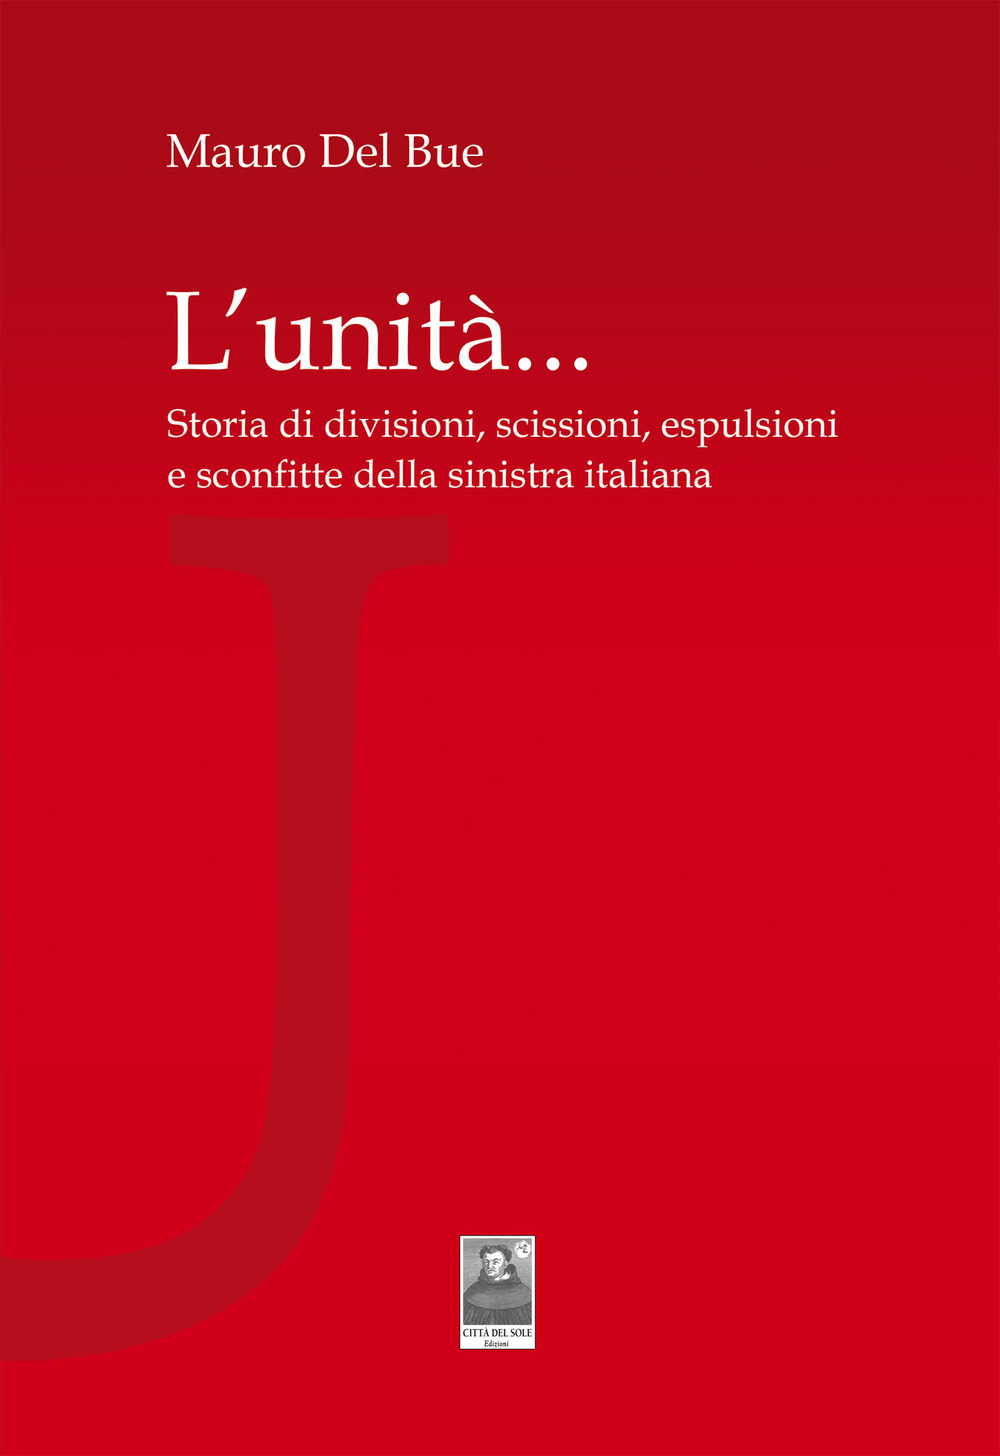 L'unità... Storia di divisioni, scissioni, espulsioni e sconfitte della sinistra italiana